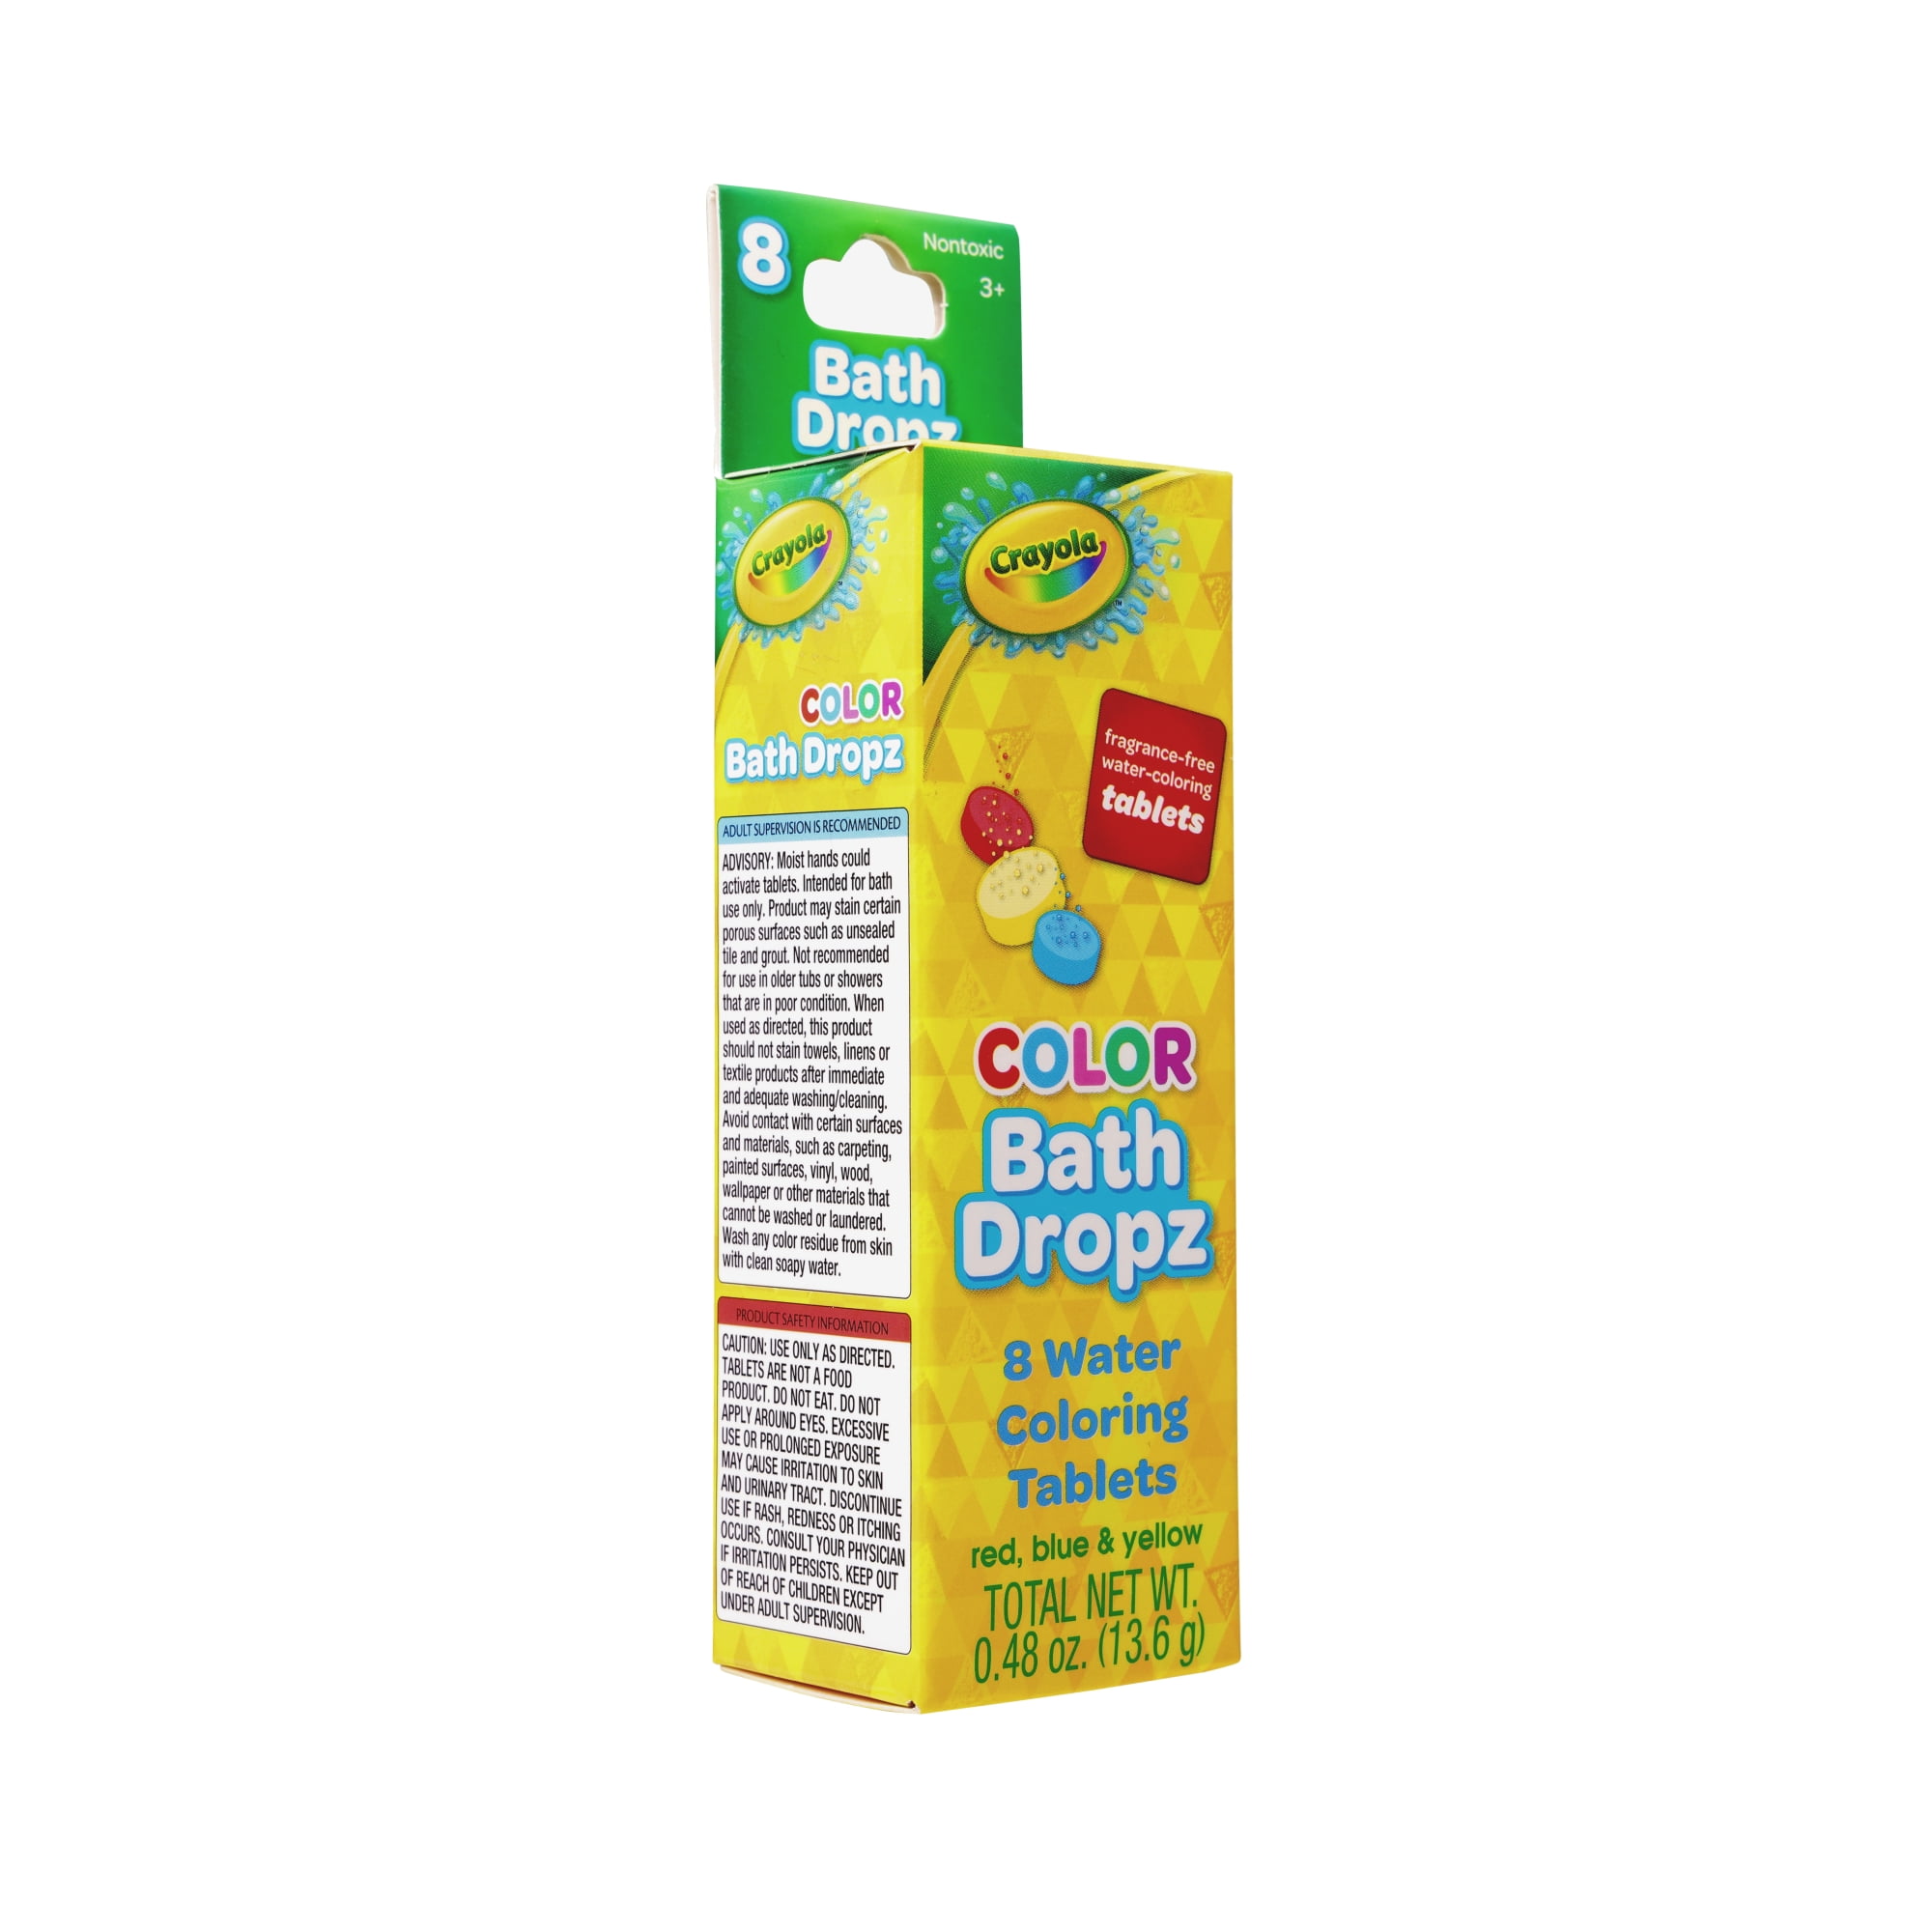 Crayola Color Bath Dropz Tablets (60 ct) Delivery - DoorDash